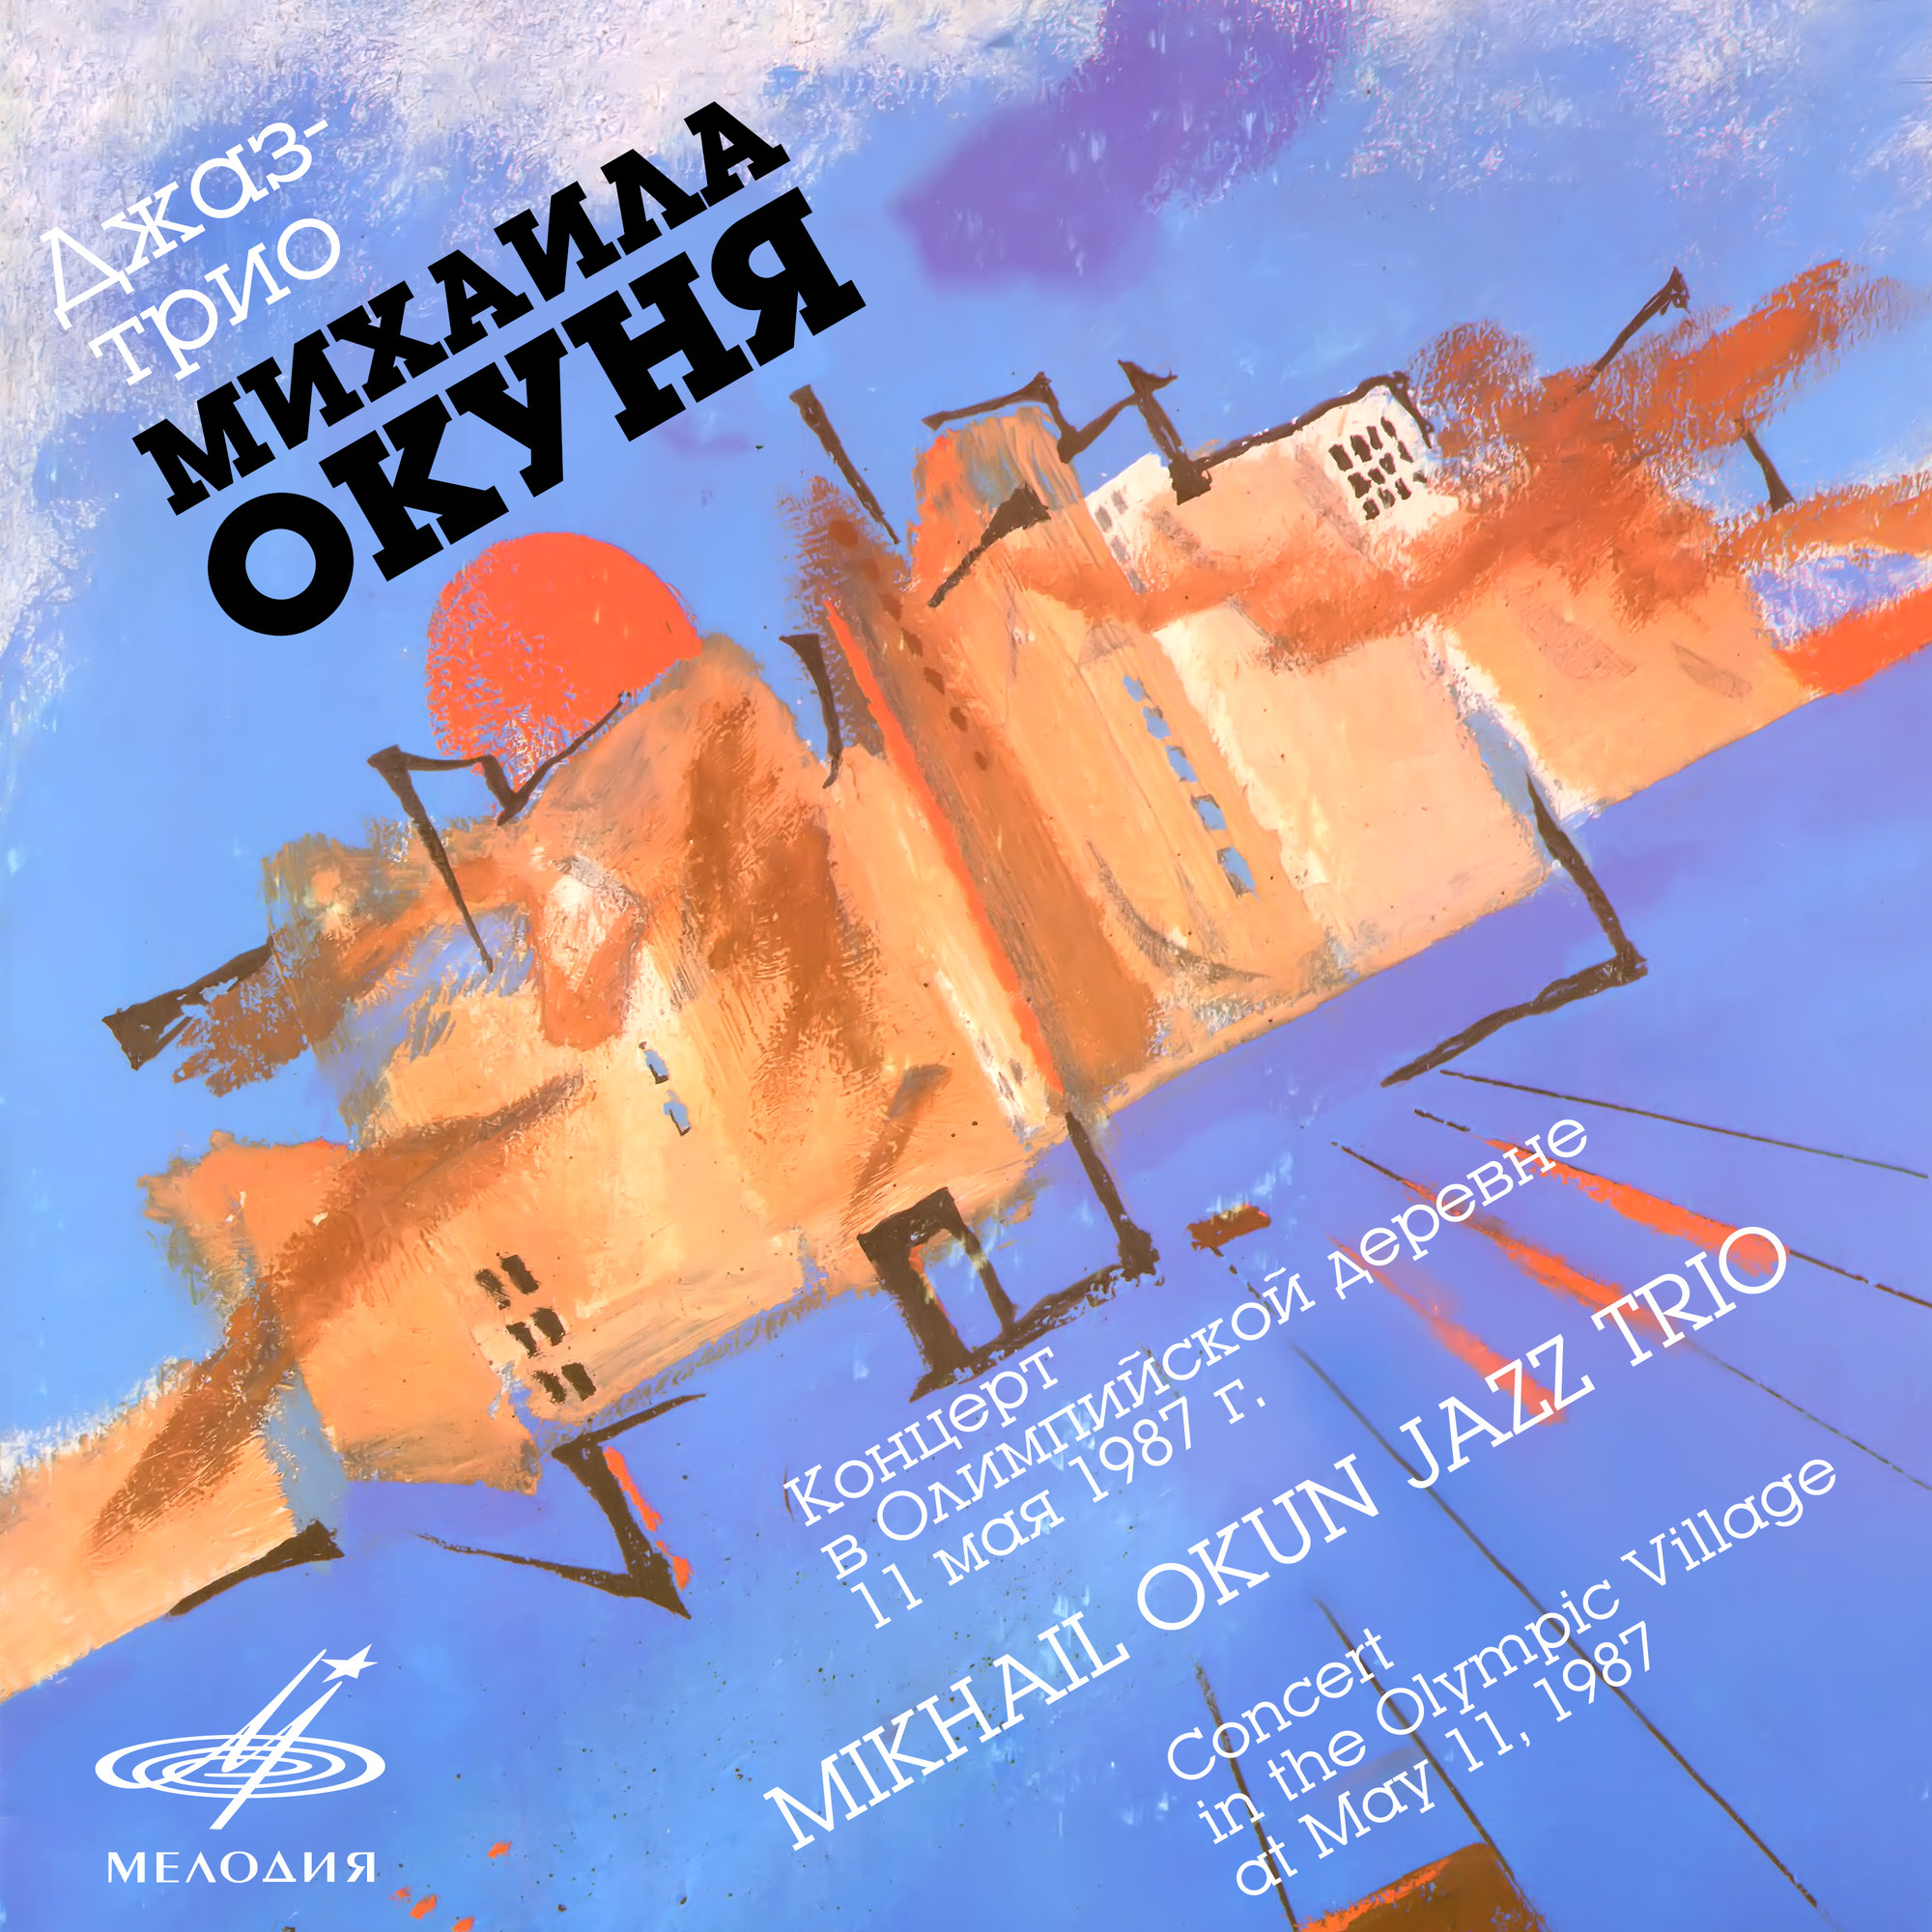 Джаз-трио Михаила Окуня. Концерт в Олимпийской деревне 11 мая 1987 г. (Live)